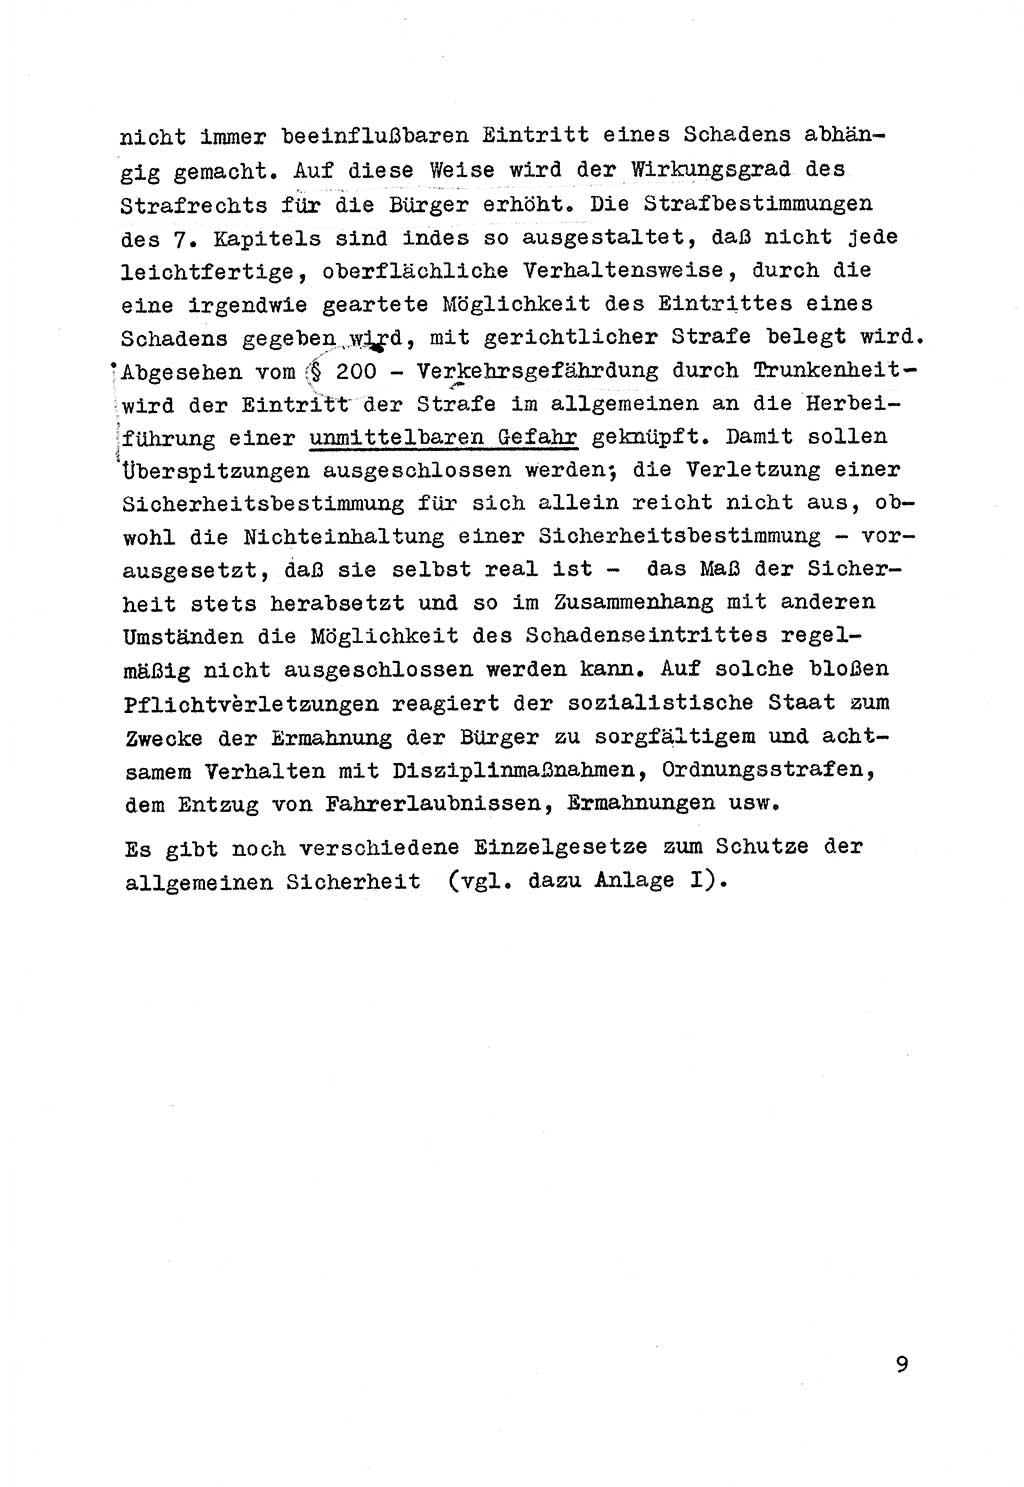 Strafrecht der DDR (Deutsche Demokratische Republik), Besonderer Teil, Lehrmaterial, Heft 7 1970, Seite 9 (Strafr. DDR BT Lehrmat. H. 7 1970, S. 9)